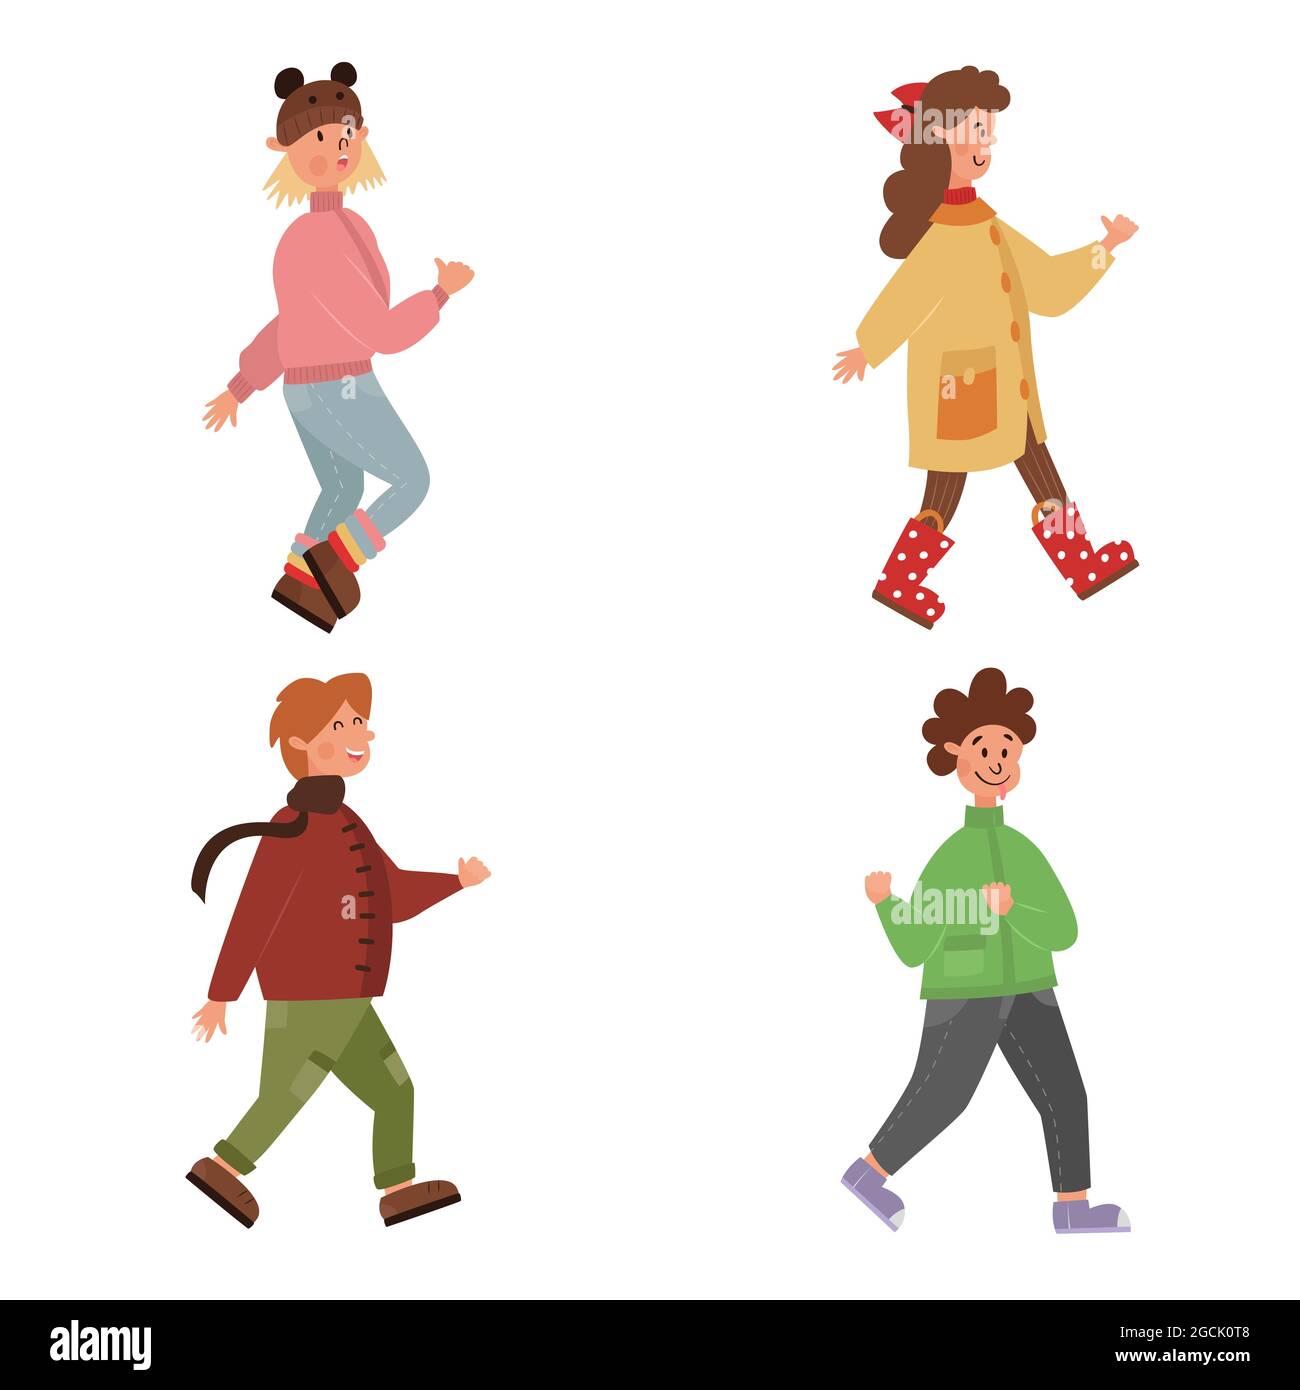 Cartoon Satz von niedlichen Kindern in Bewegung. Lustige Schuljungen und Mädchen gehen. Helle flache Darstellung von Menschen in Herbst- oder Frühlingskleidung. Kinder Stock Vektor